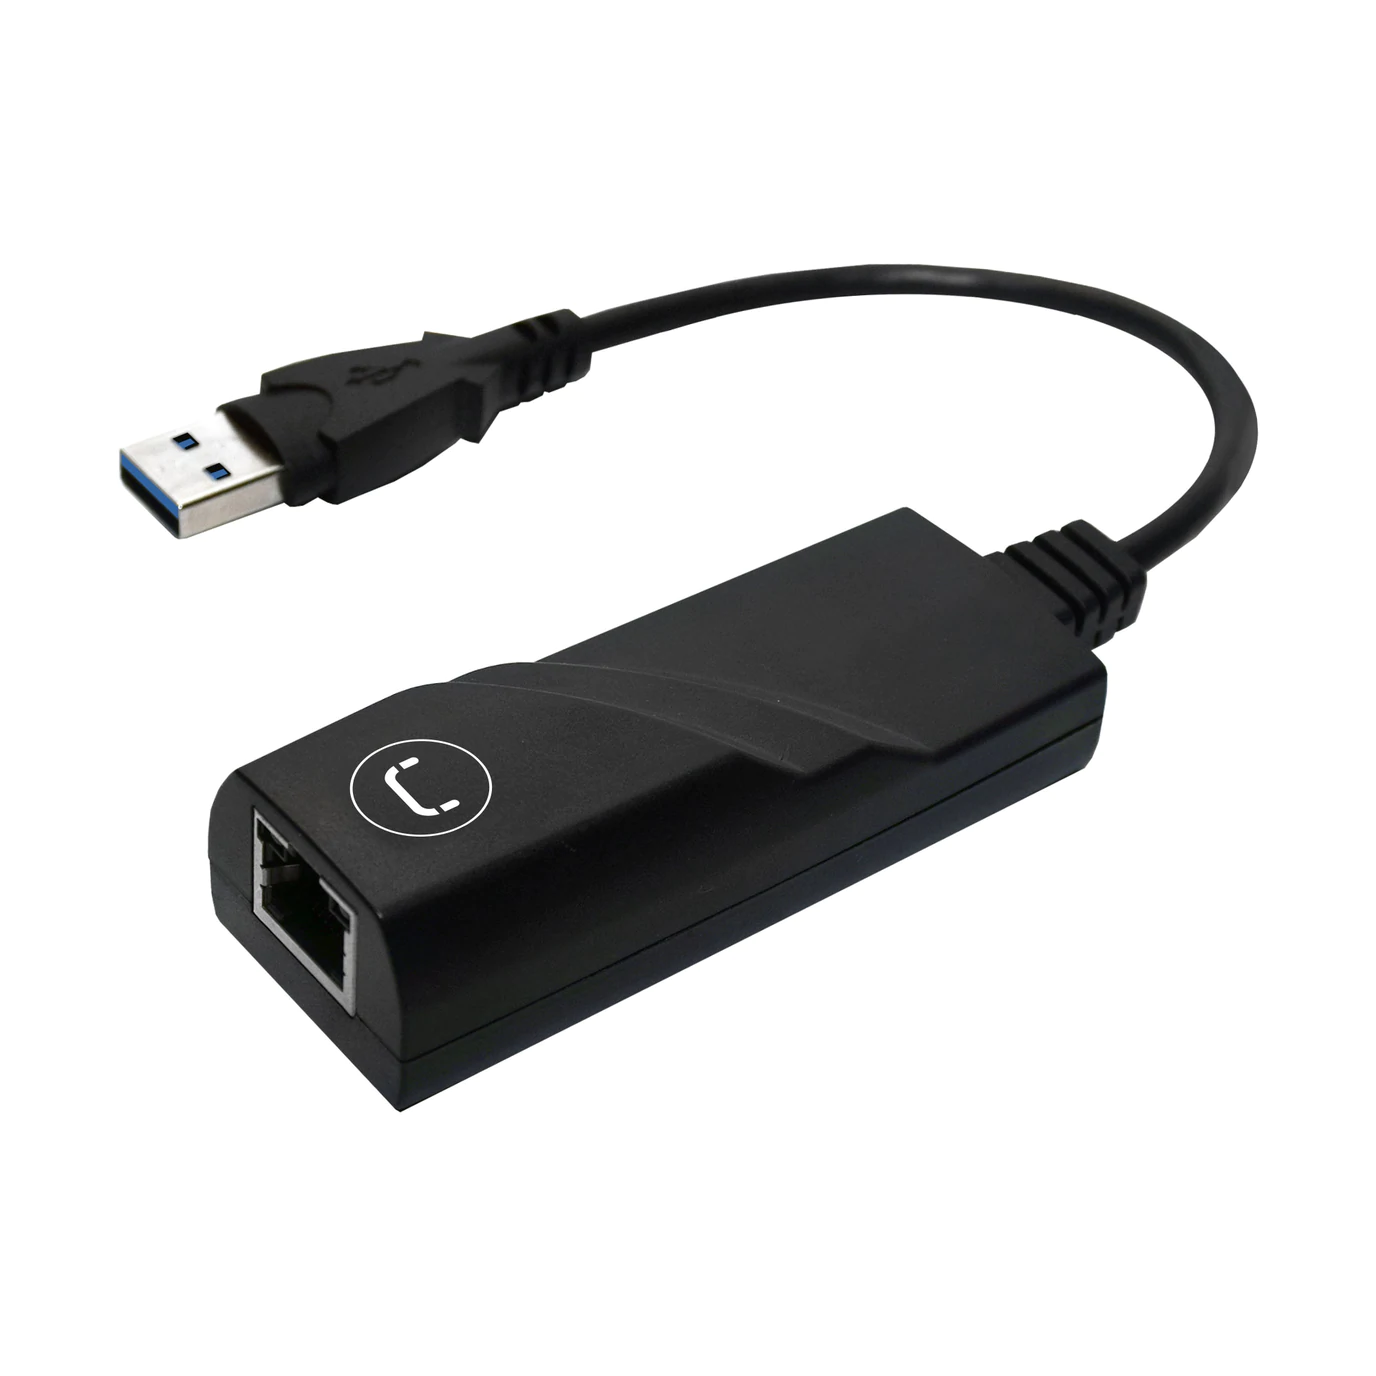 Adaptador carga inalámbrica micro USB (estrecho hacia arriba) –  Tecnoshoponline